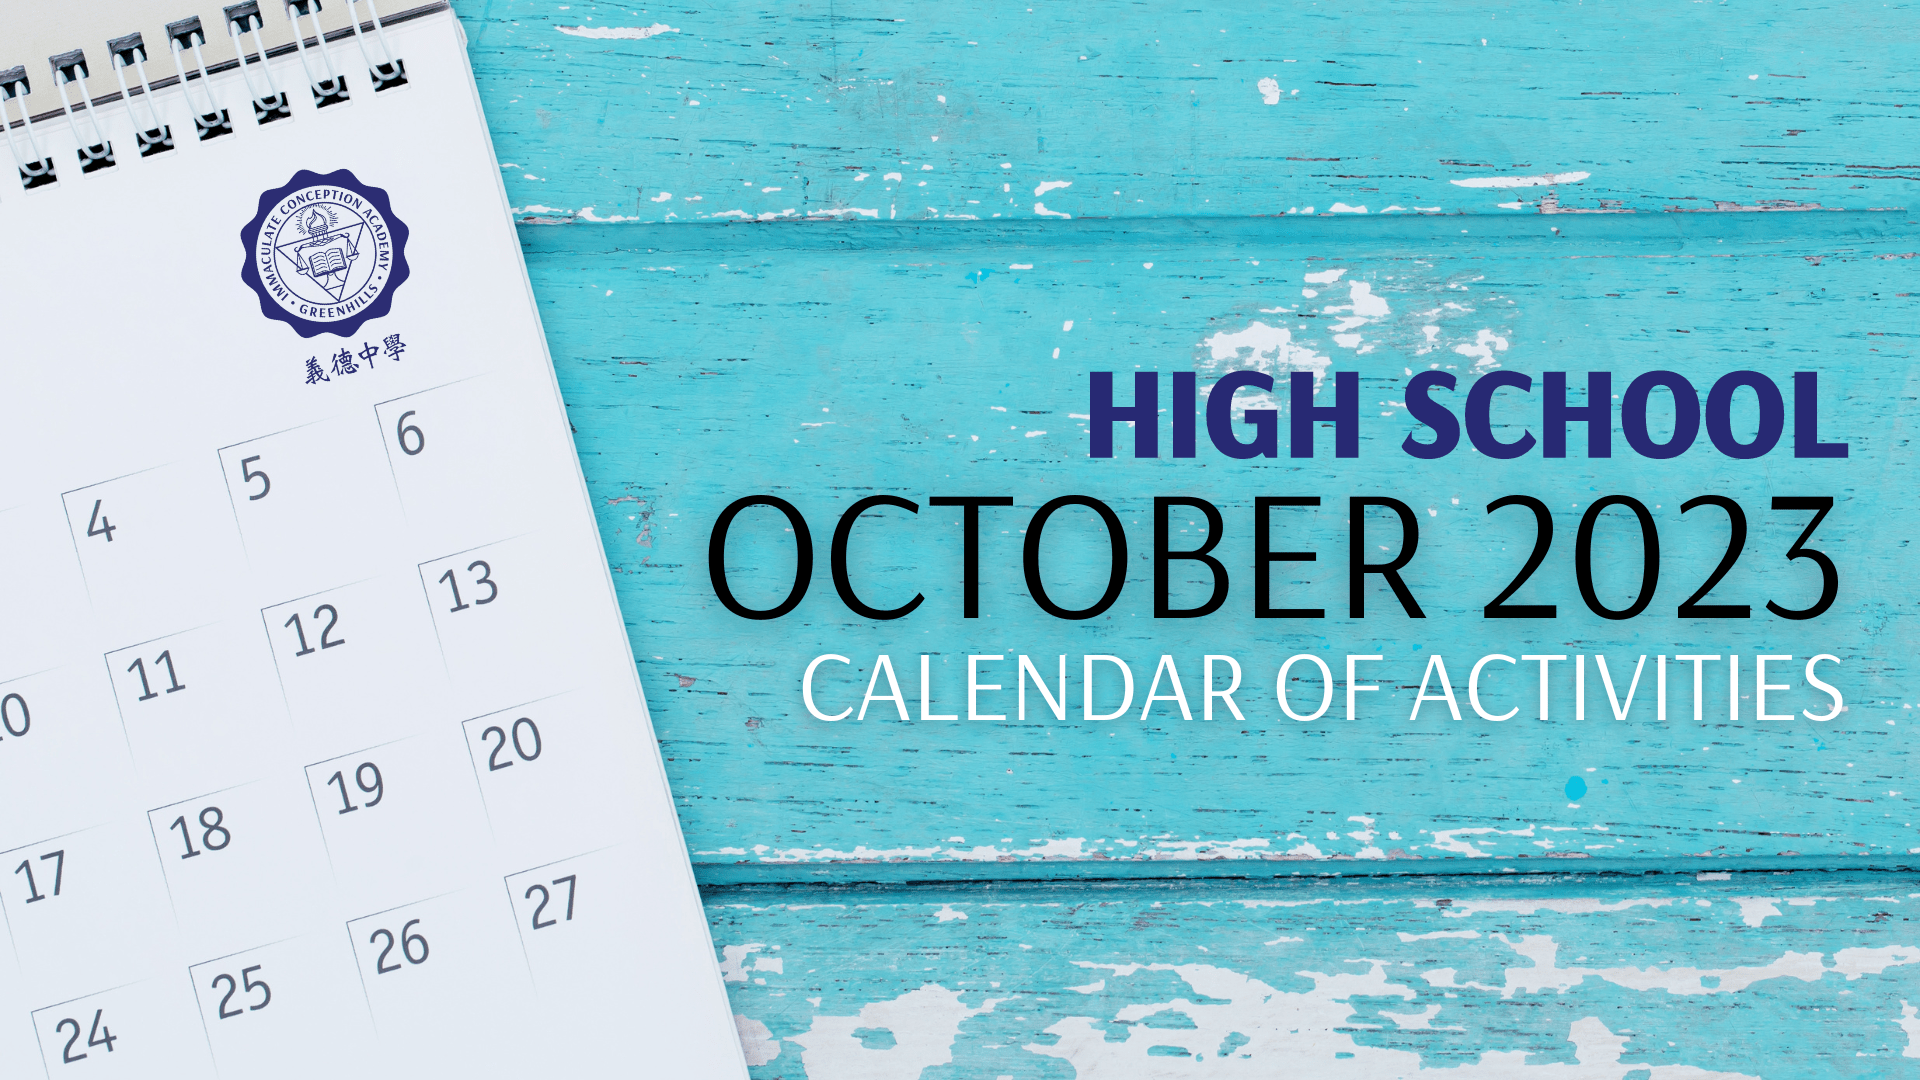 October Calendar of Activities for High School